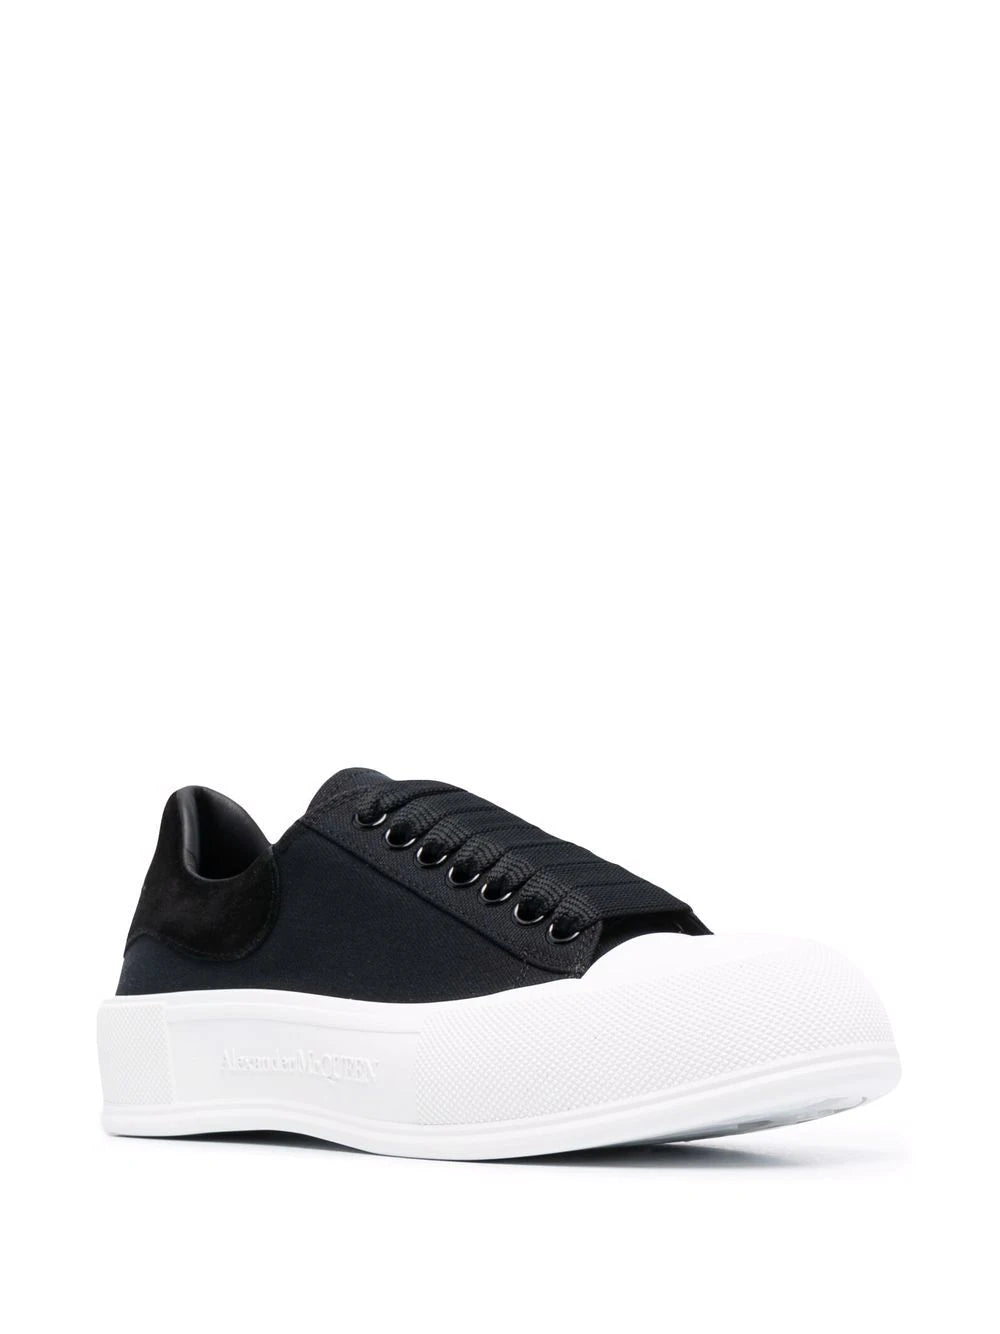 ALEXANDER MCQUEEN MEN Deck Lace-up Plimsoll Sneakers Black/White - MAISONDEFASHION.COM